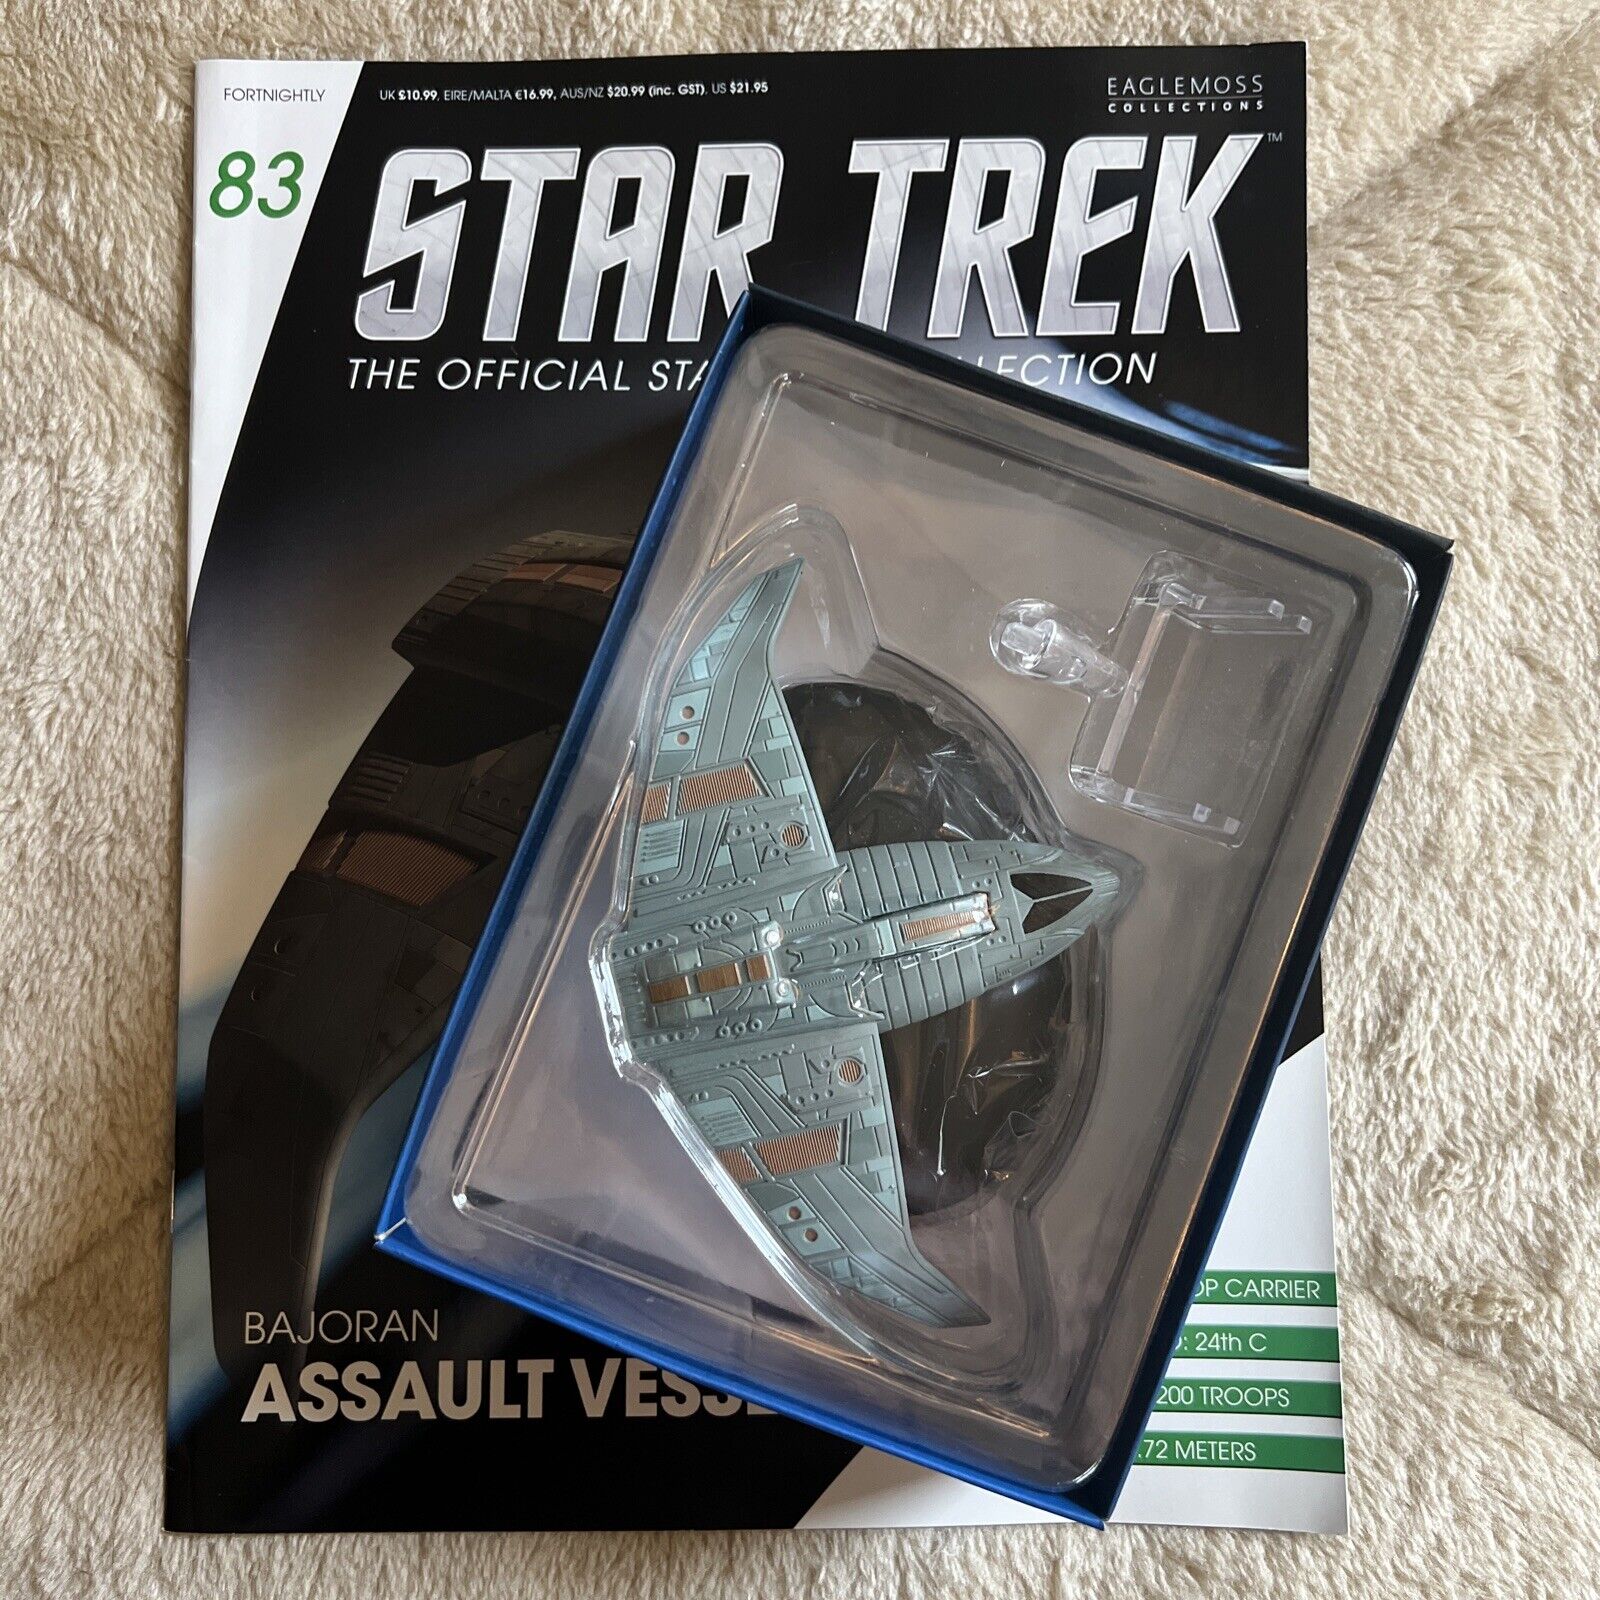 Star Trek Eaglemoss Banjo ran Assault Vessel